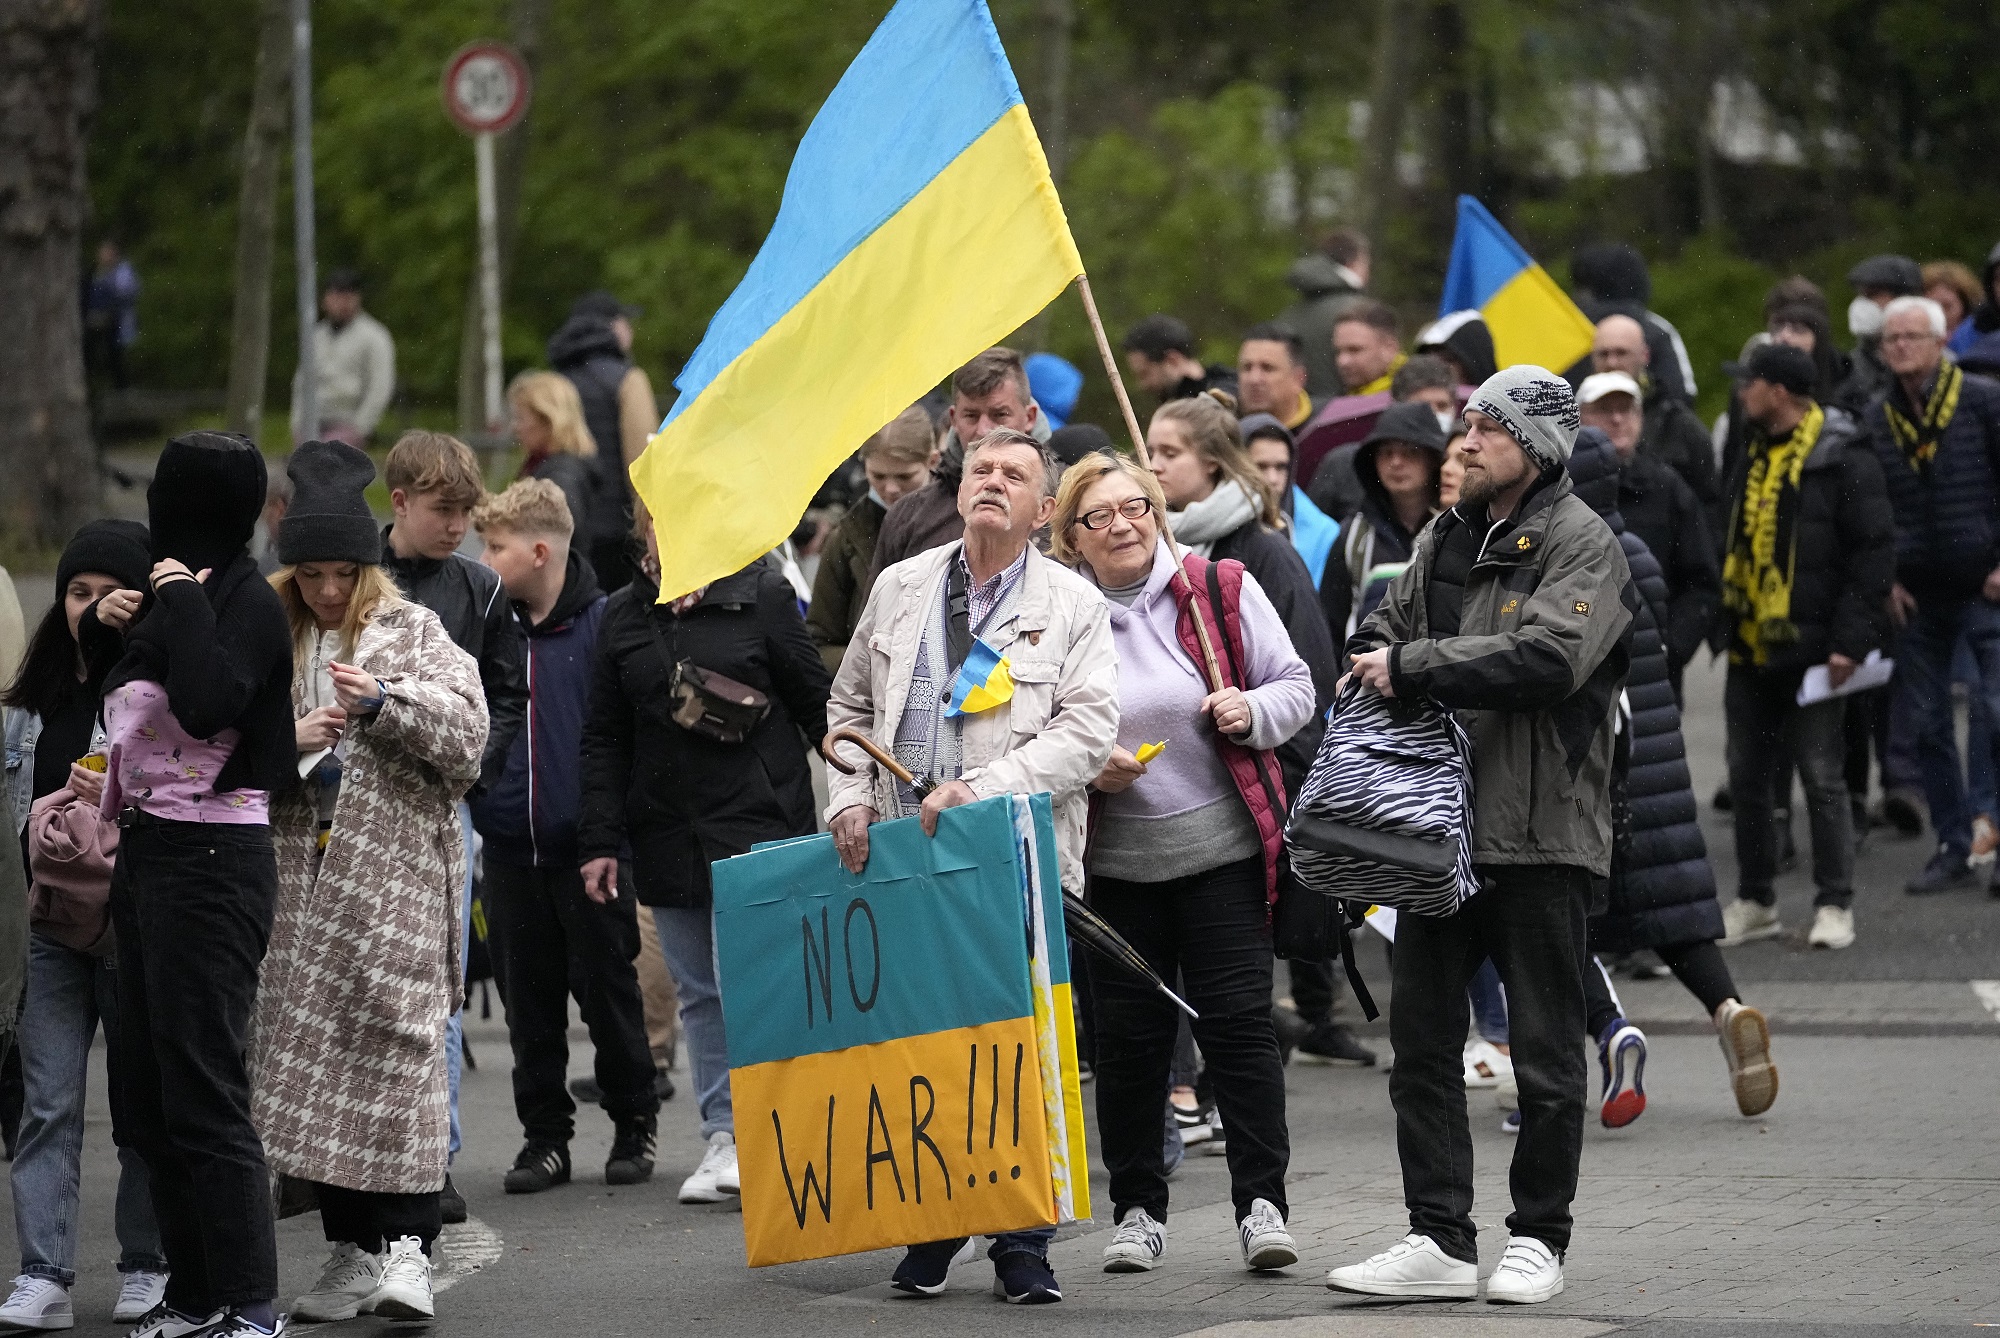 Γερμανία: Διπλωματική λύση θέλει το 60% των πολιτών έστω και με συμβιβασμό της Ουκρανίας